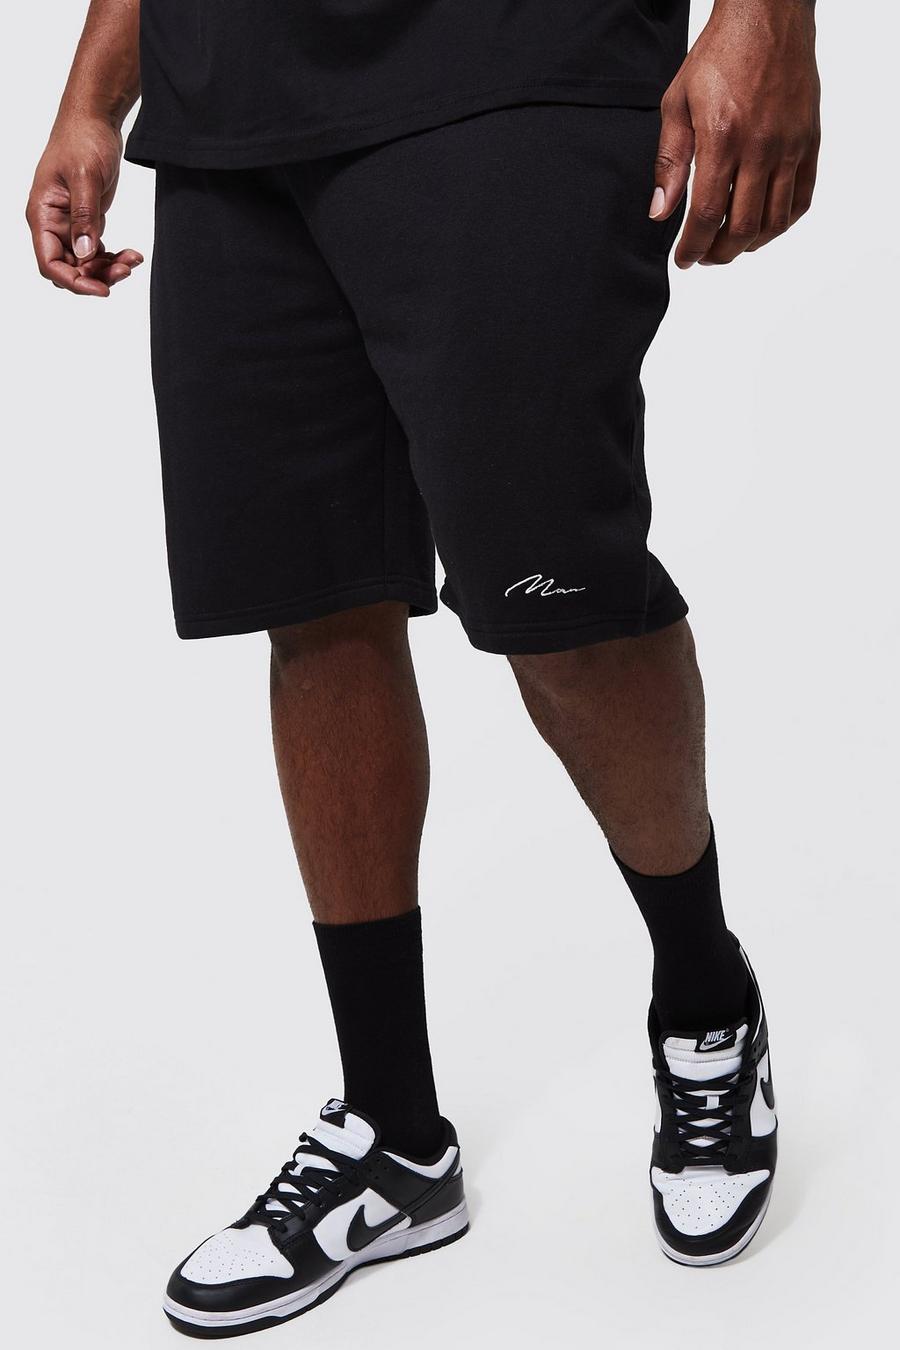 Black noir Plus Man Mid Jersey Short with REEL Cotton